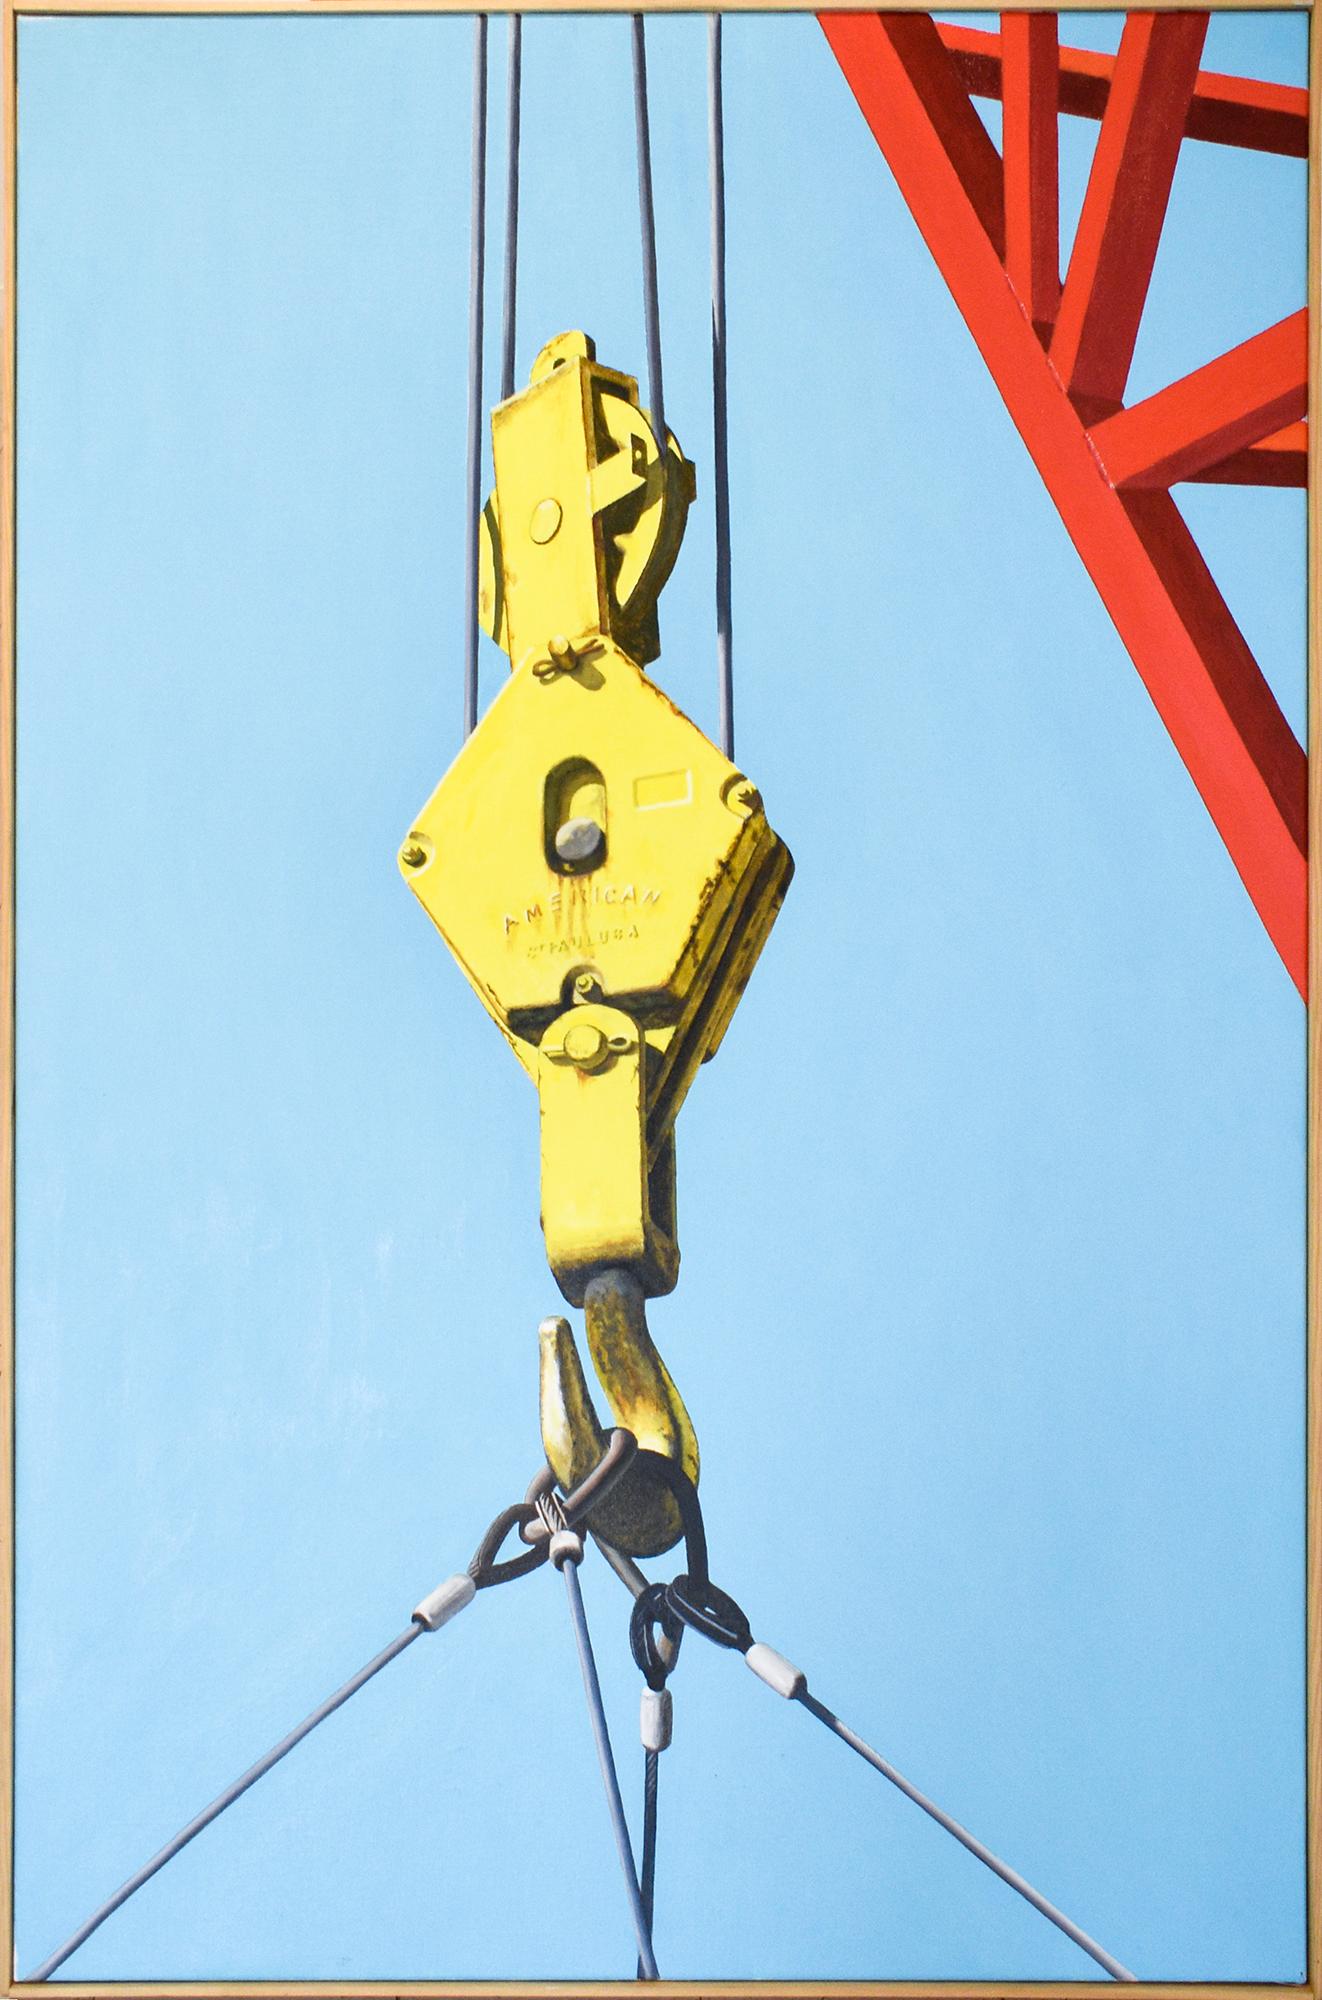 Boatyard Lift (fotorealistisches Ölgemälde eines roten und gelben Kranichs auf Blau) – Painting von Joseph E. Richards